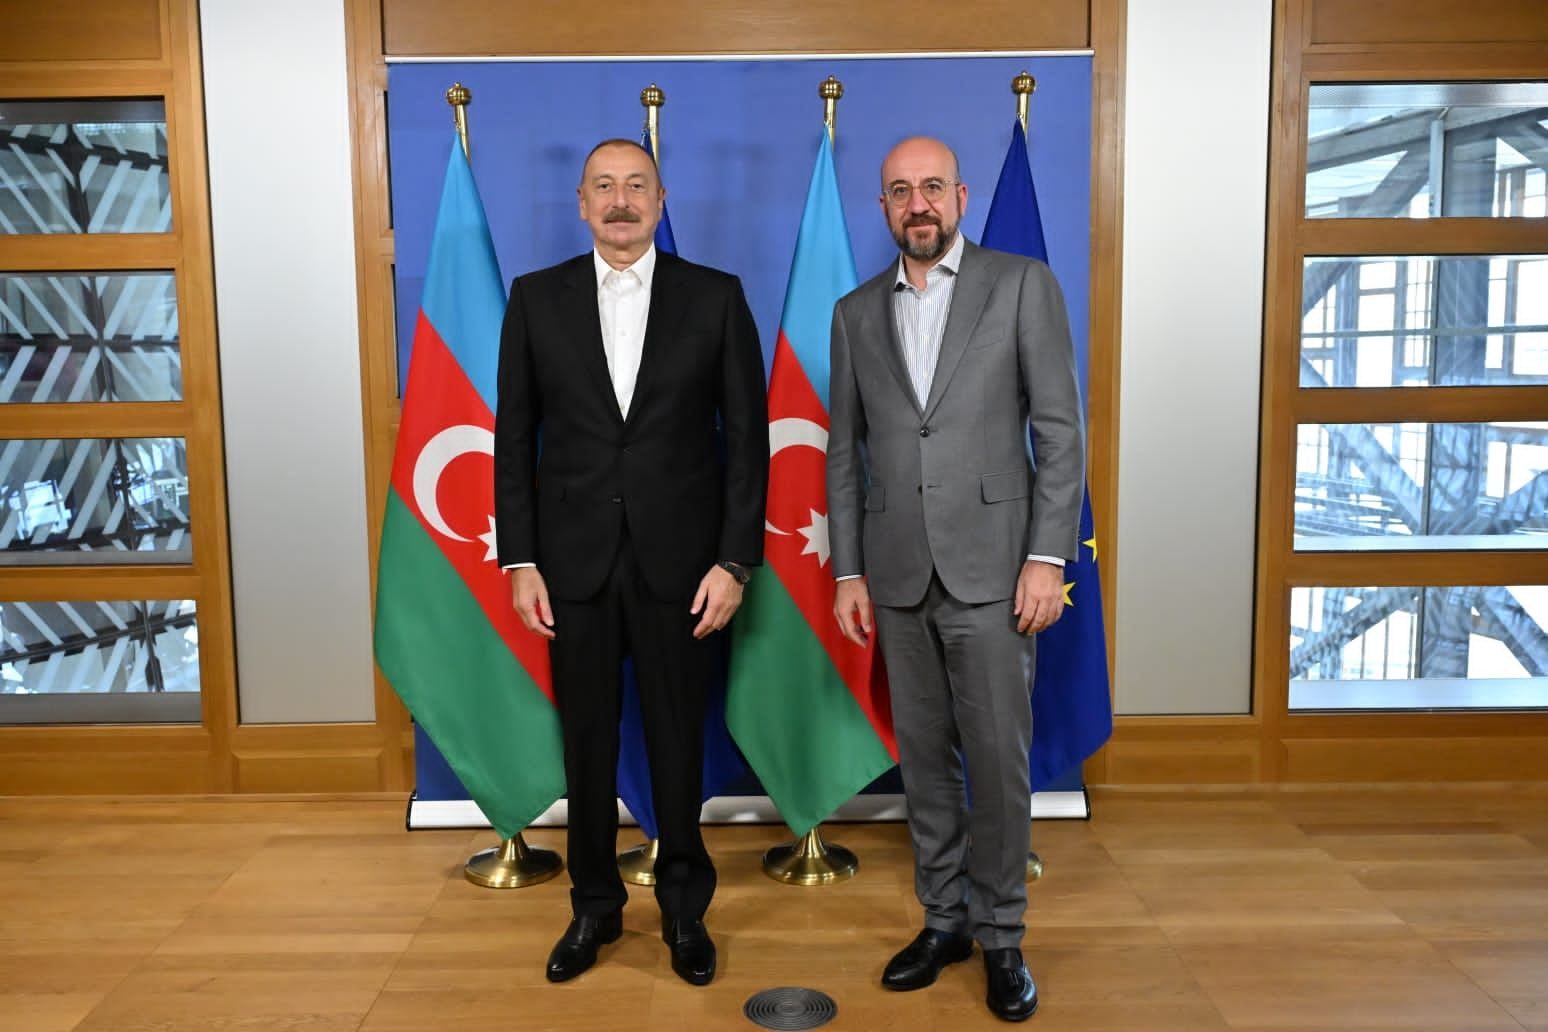 Meeting between President Ilham Aliyev, President Charles Michel kicks off in Brussels [PHOTOS/VIDEO]